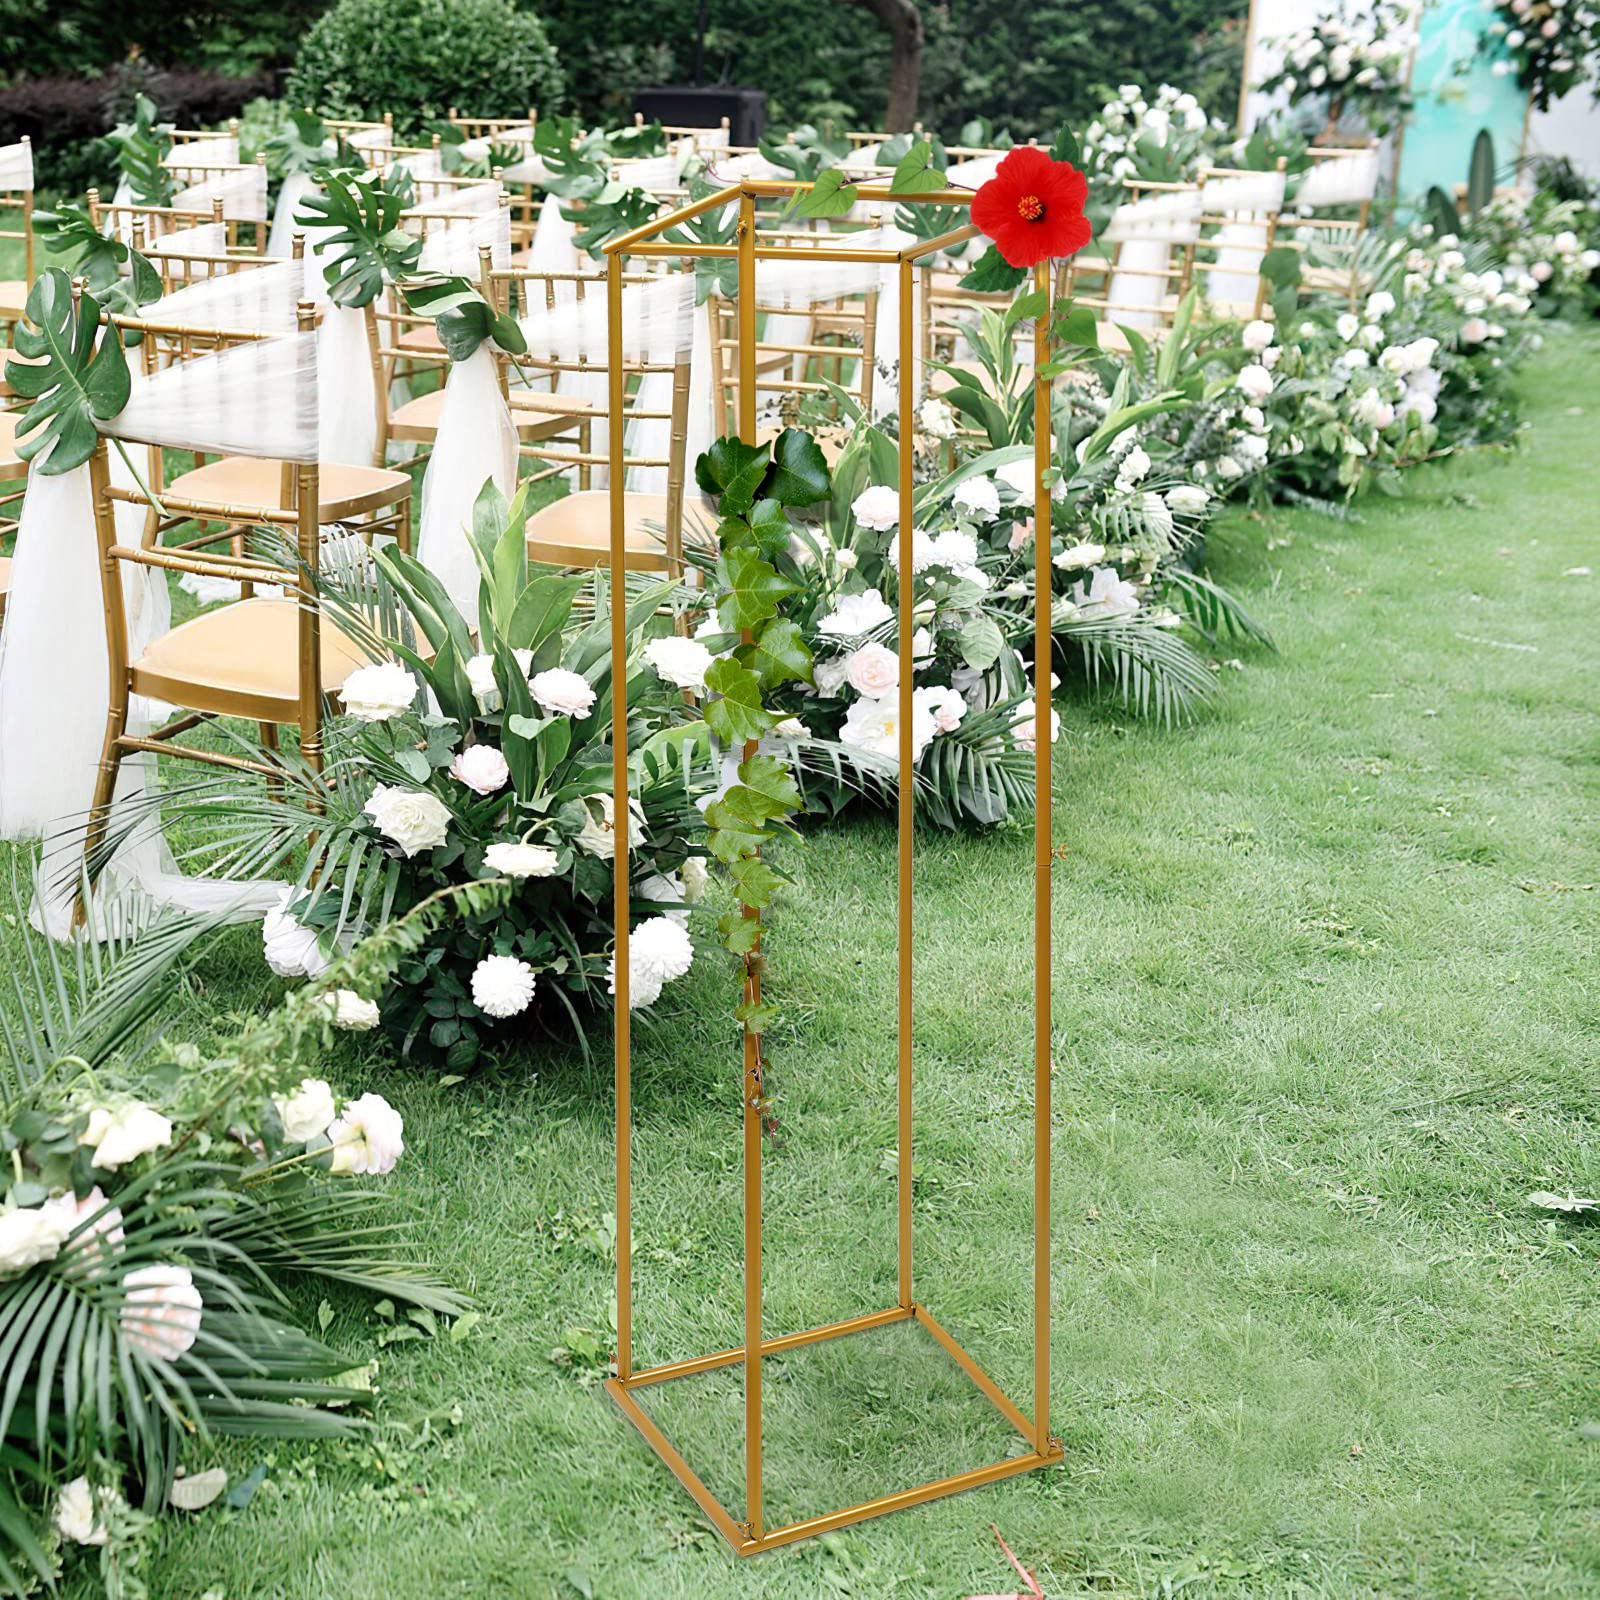 Supporto per fiori Supporto per piante in metallo dorato Colonna per fiori Colonna alta a forma di cubo